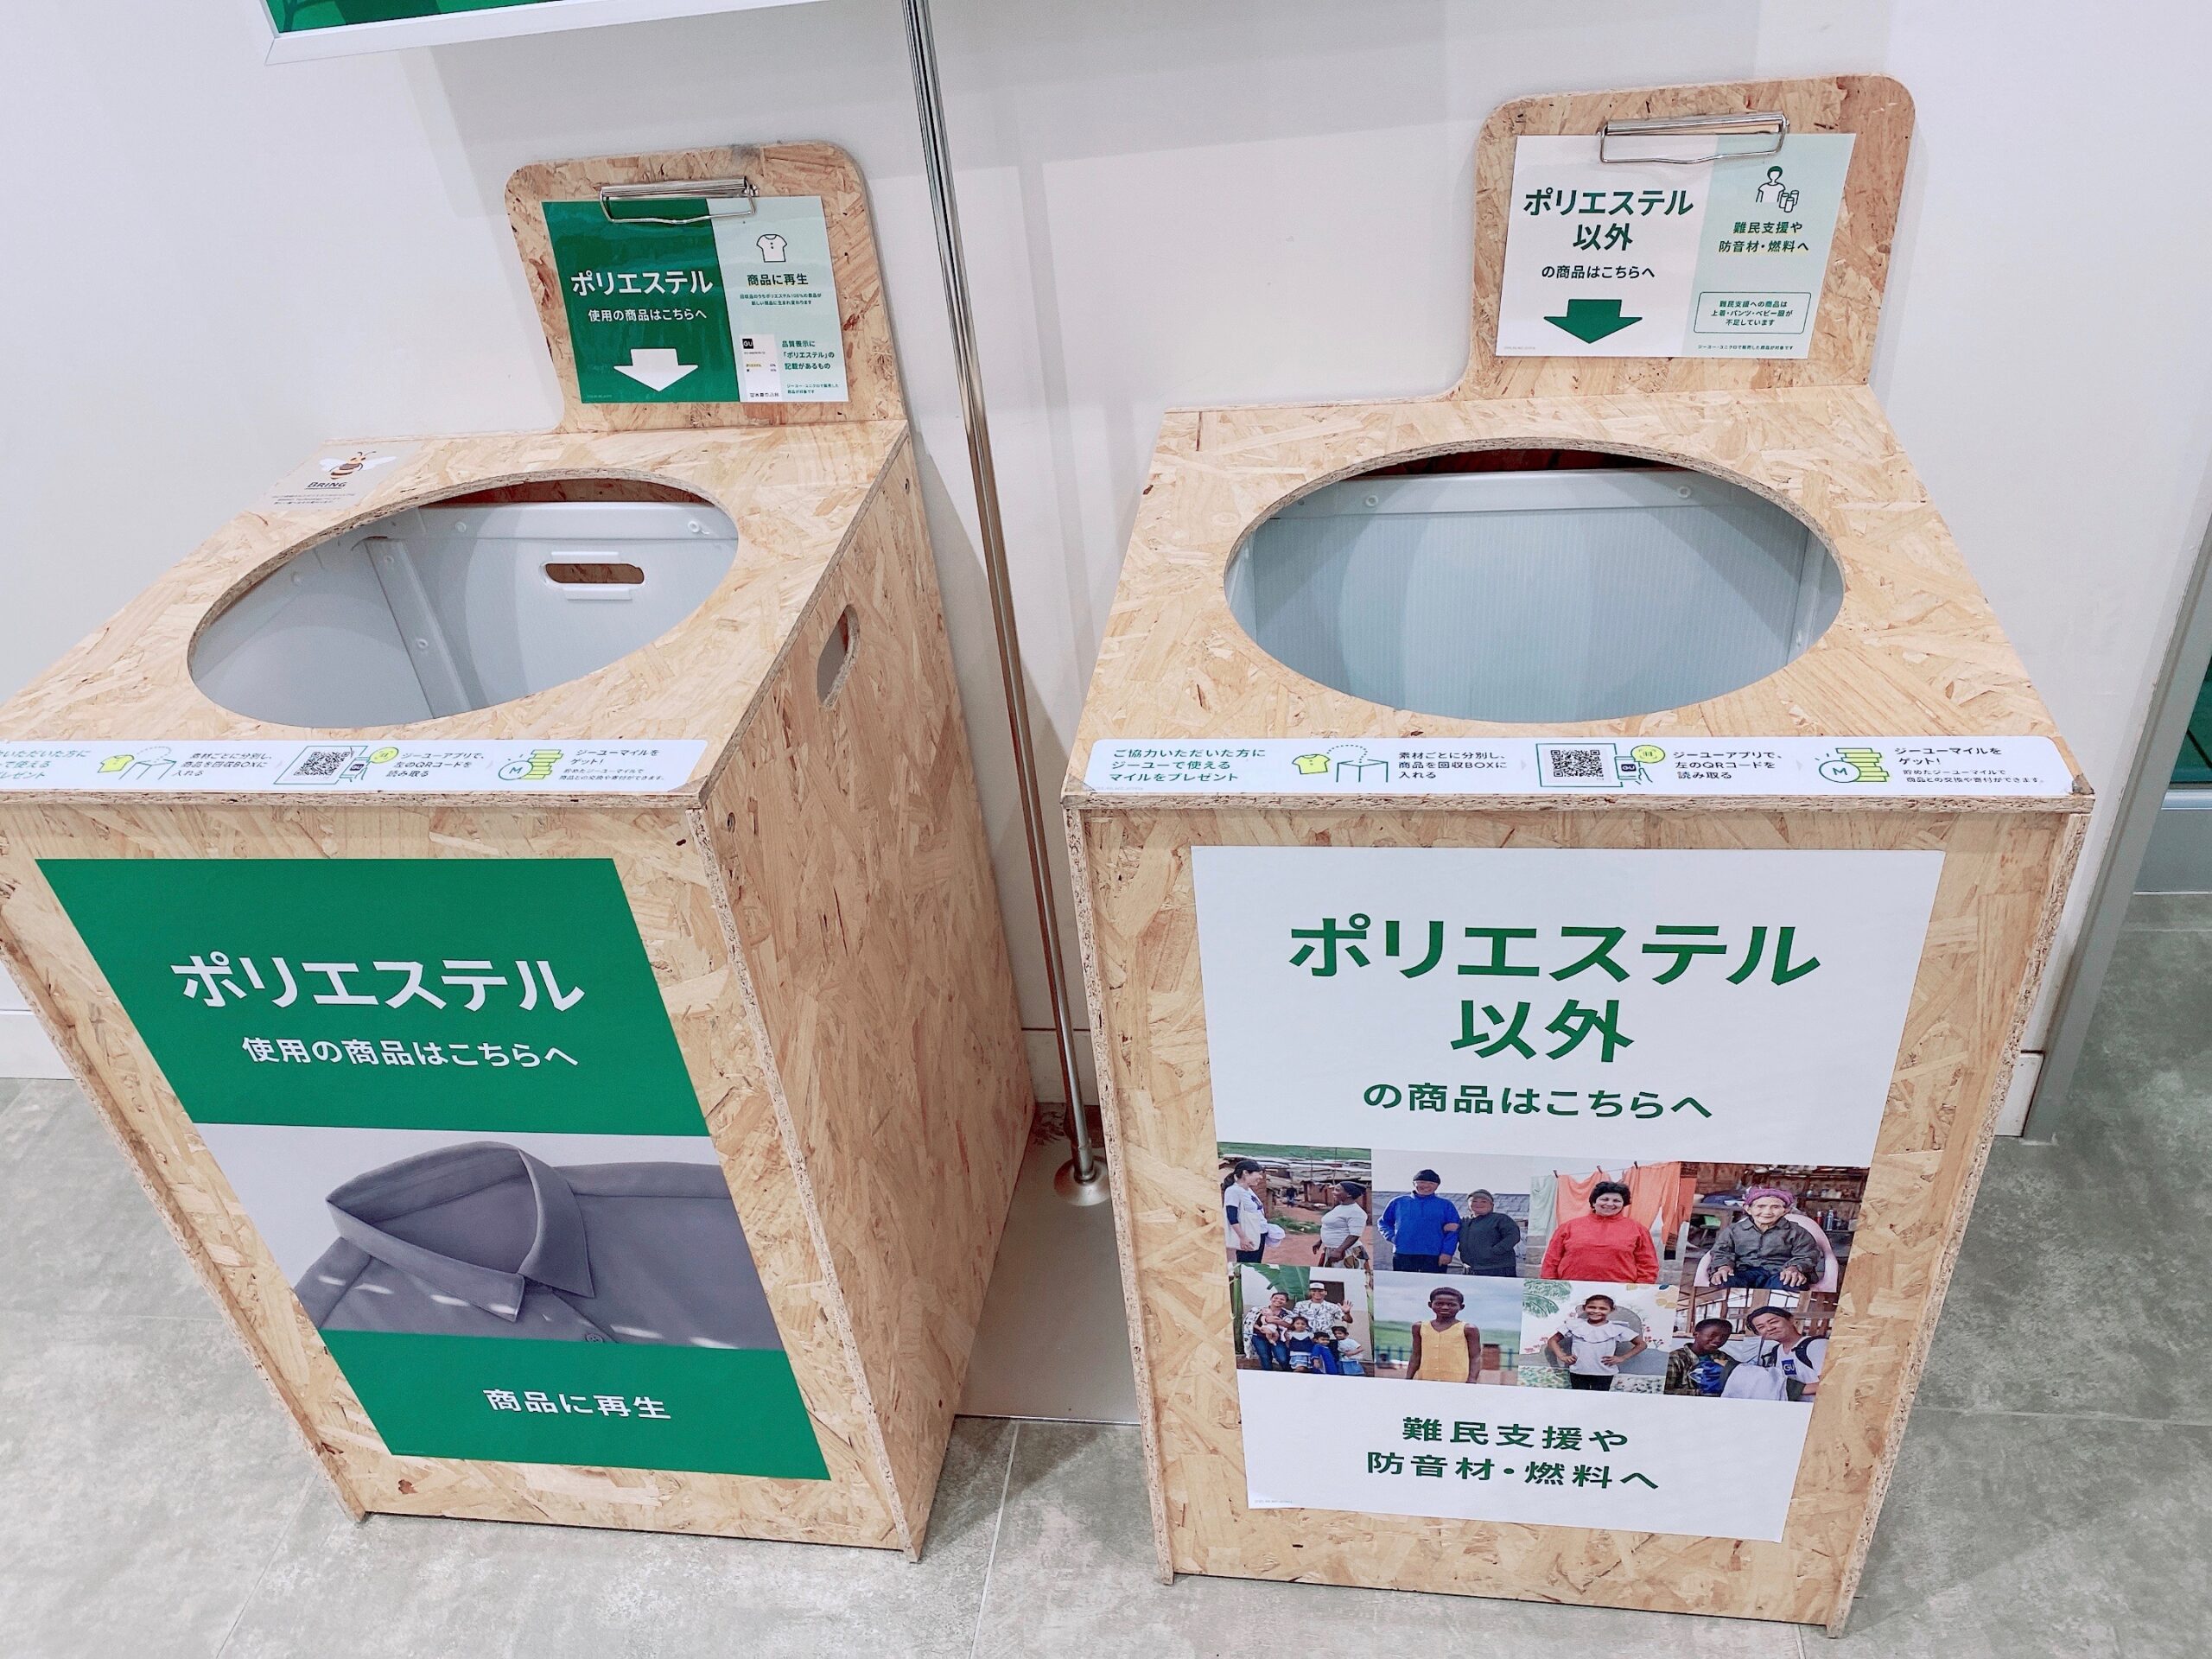 Uniqlo リサイクル ボックス